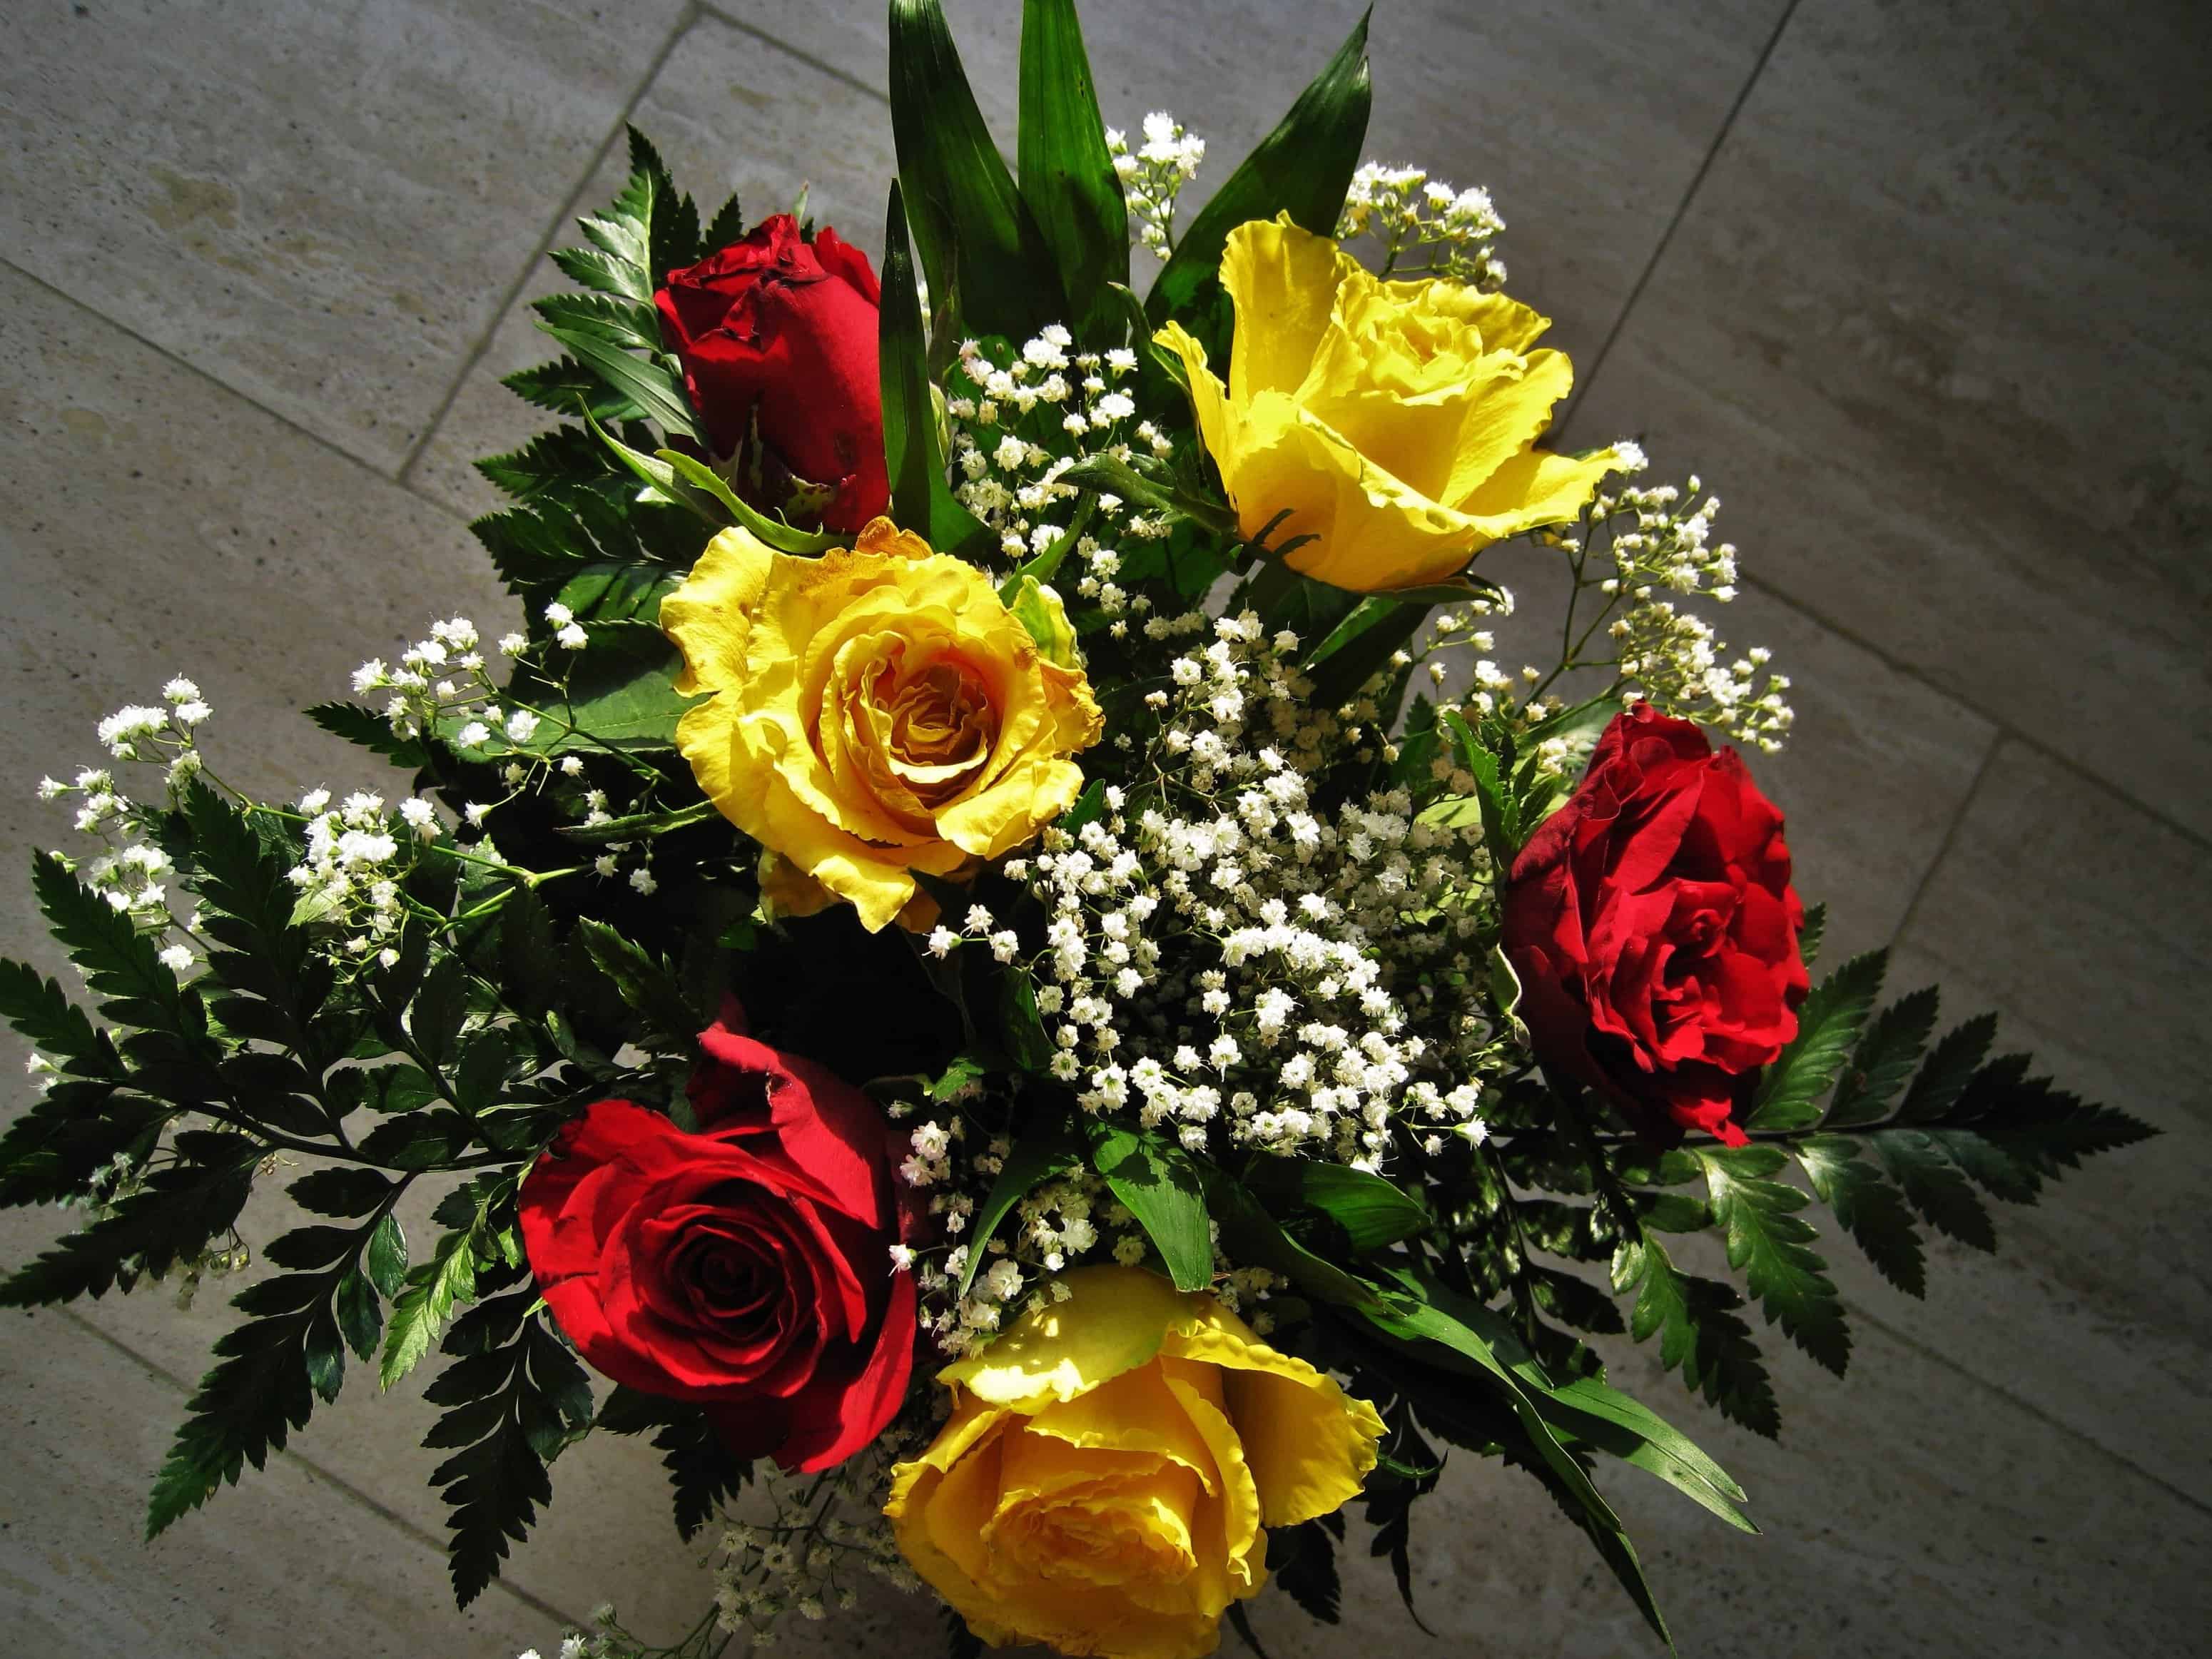 Free picture: bouquet, green leaf, arrangement, flora, rose, flower, plant